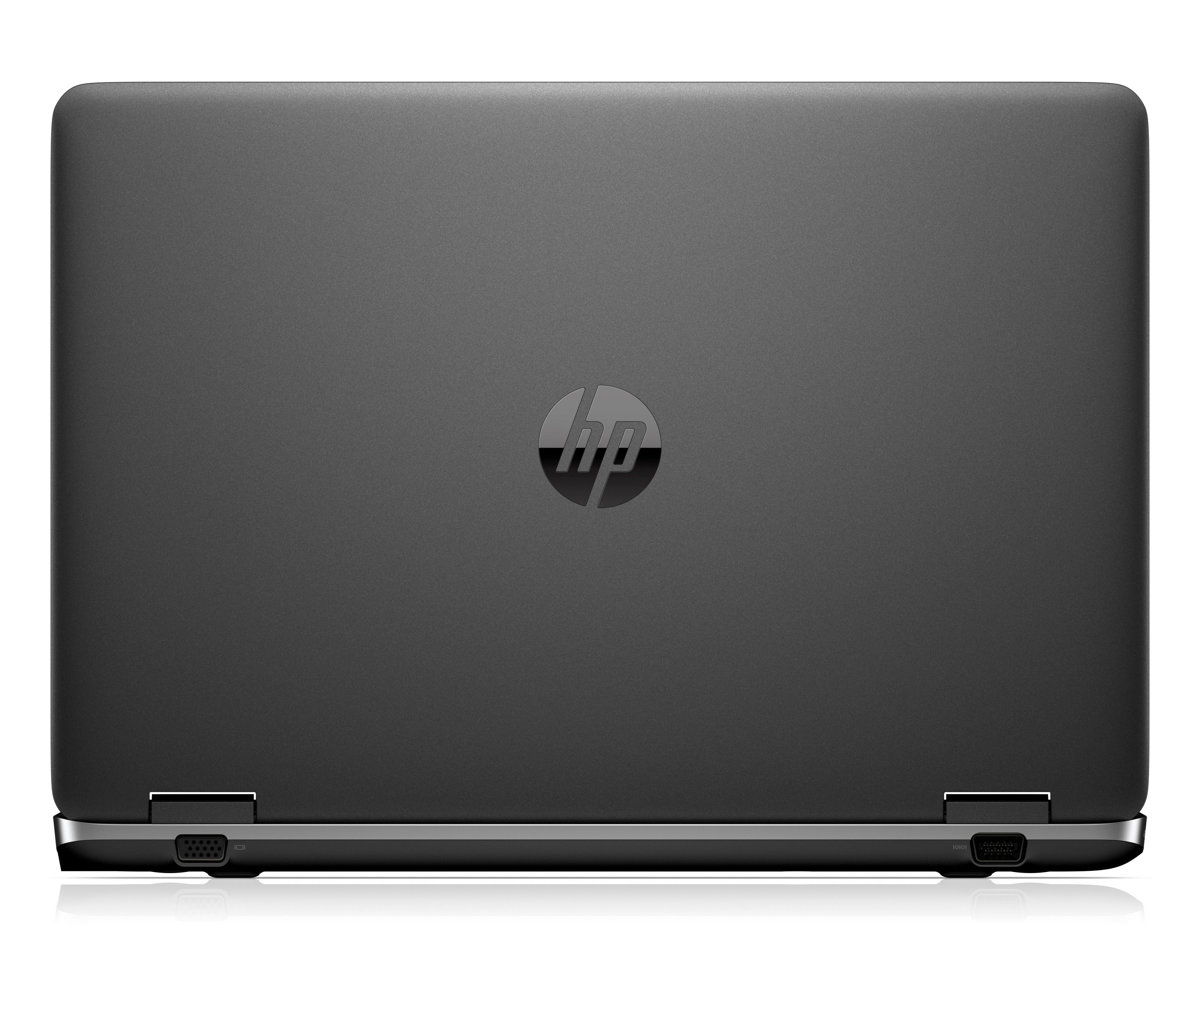 HP ProBook 655 G3